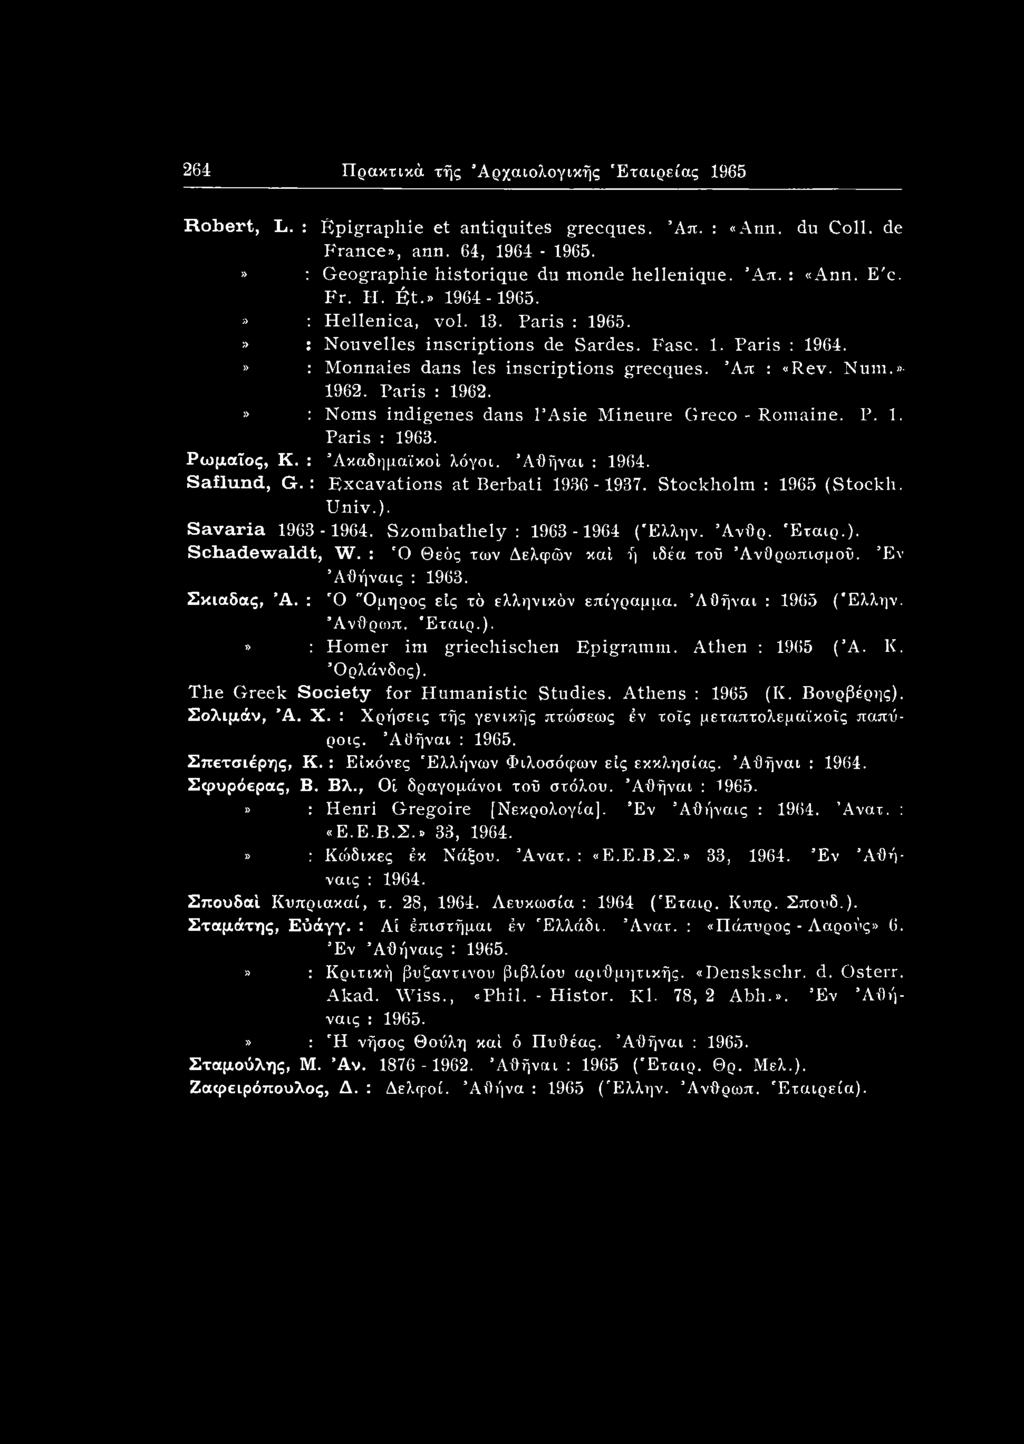 » : Notns indigenes dans l Asie Mineure Greco - Romaine. P. 1. Paris : 1963. Ρωμαίος, K. : Ακαδημαϊκοί λόγοι. Άθήναι : 1964. Saflund, G. : Excavations at Berbati 1936-1937. Stockholm : 1965 (Stockh.